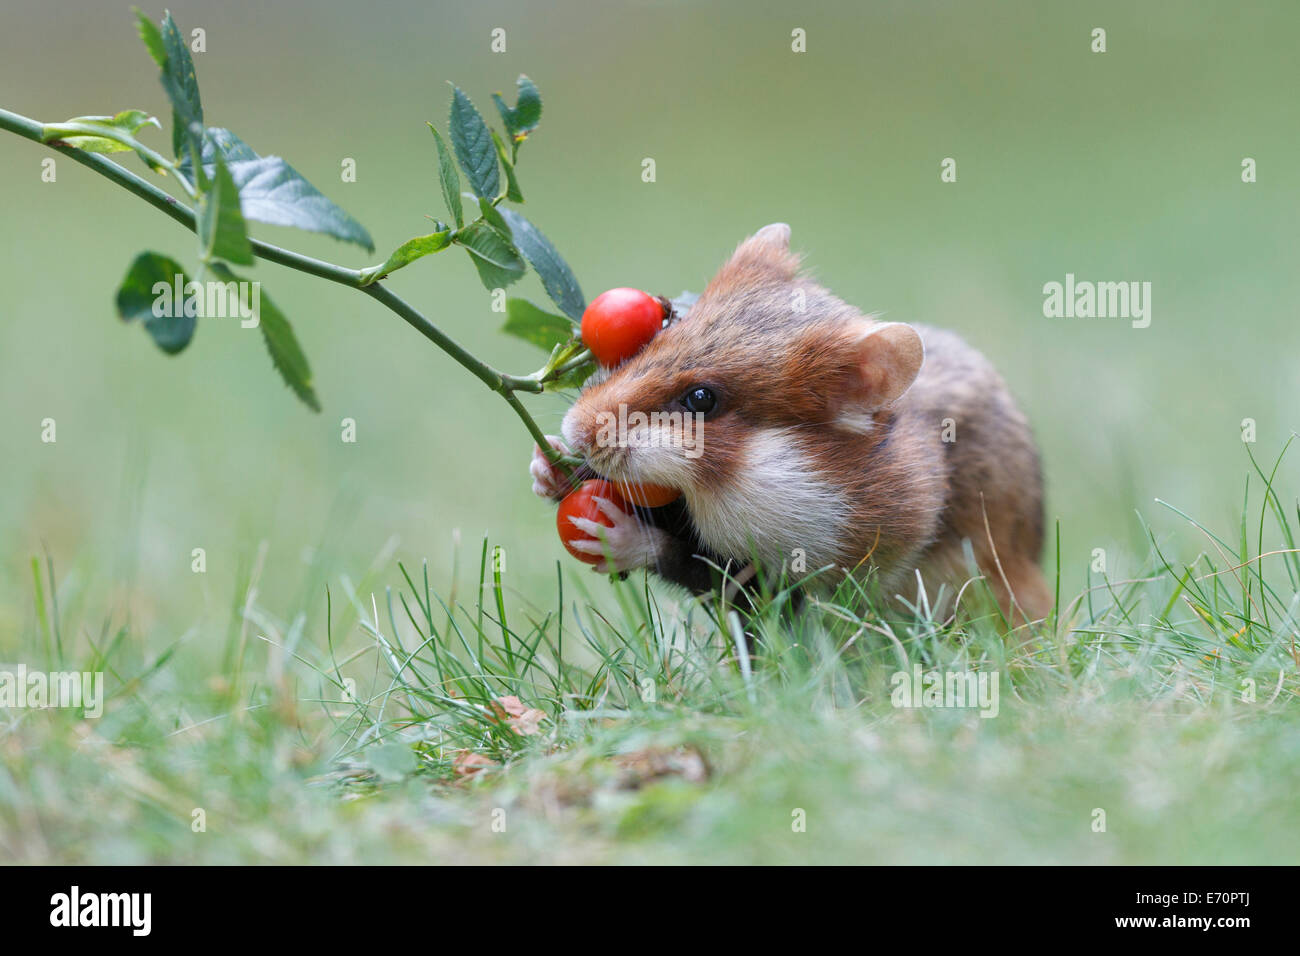 Grand hamster (Cricetus cricetus) en prenant un cynorhodon pour ses hoard, Autriche Banque D'Images